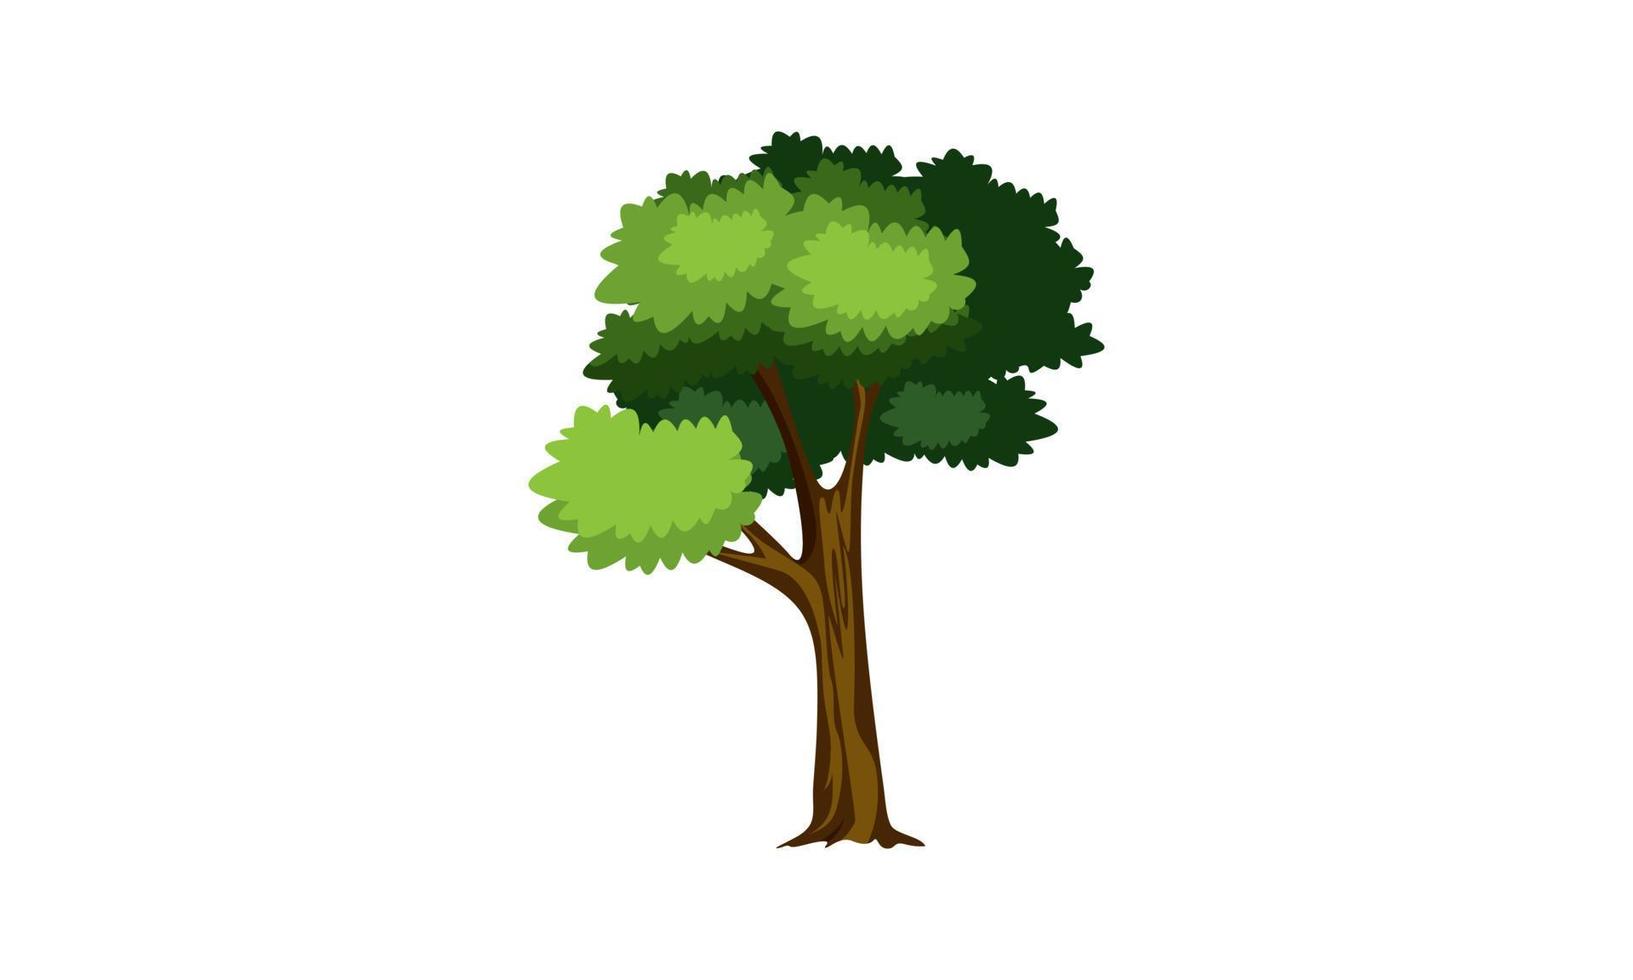 arbre vert à feuilles caduques avec des racines exposées illustration vectorielle isolée vecteur